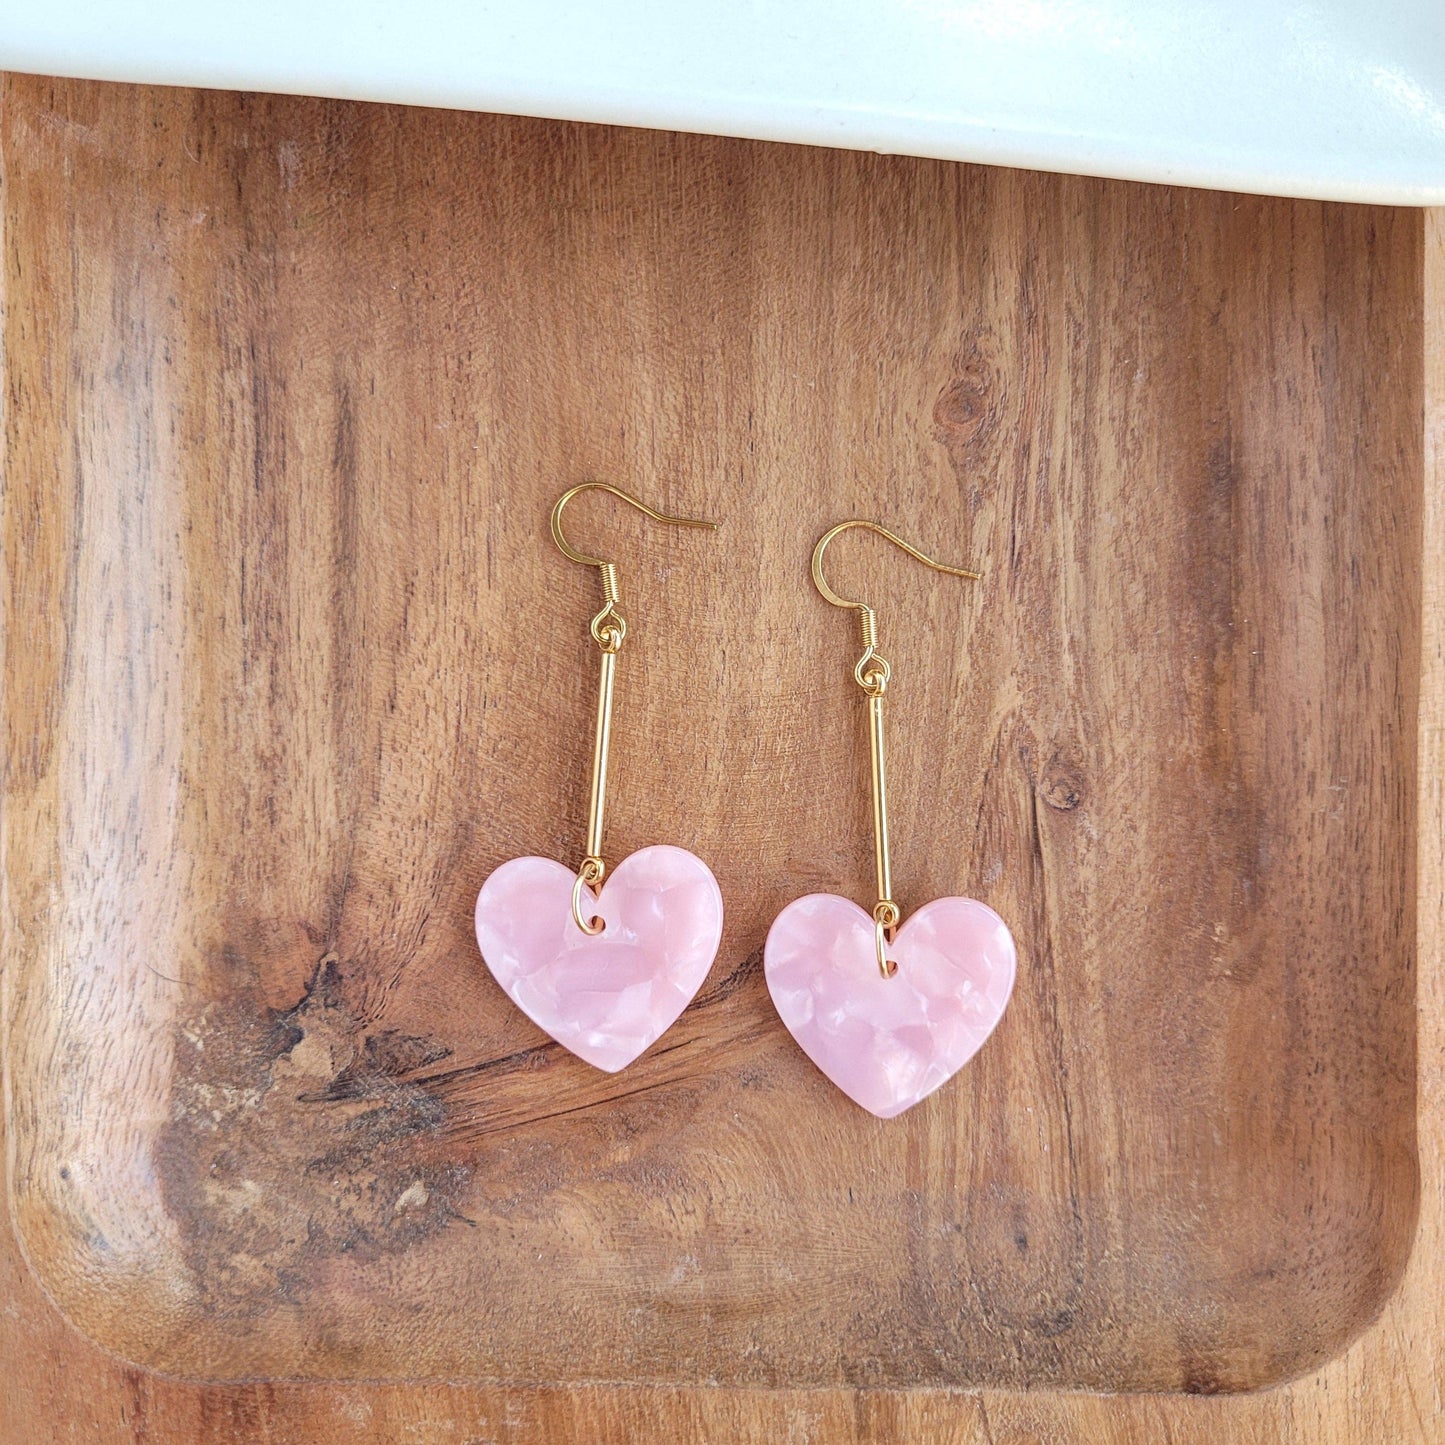 Mina Heart Earrings - Pink